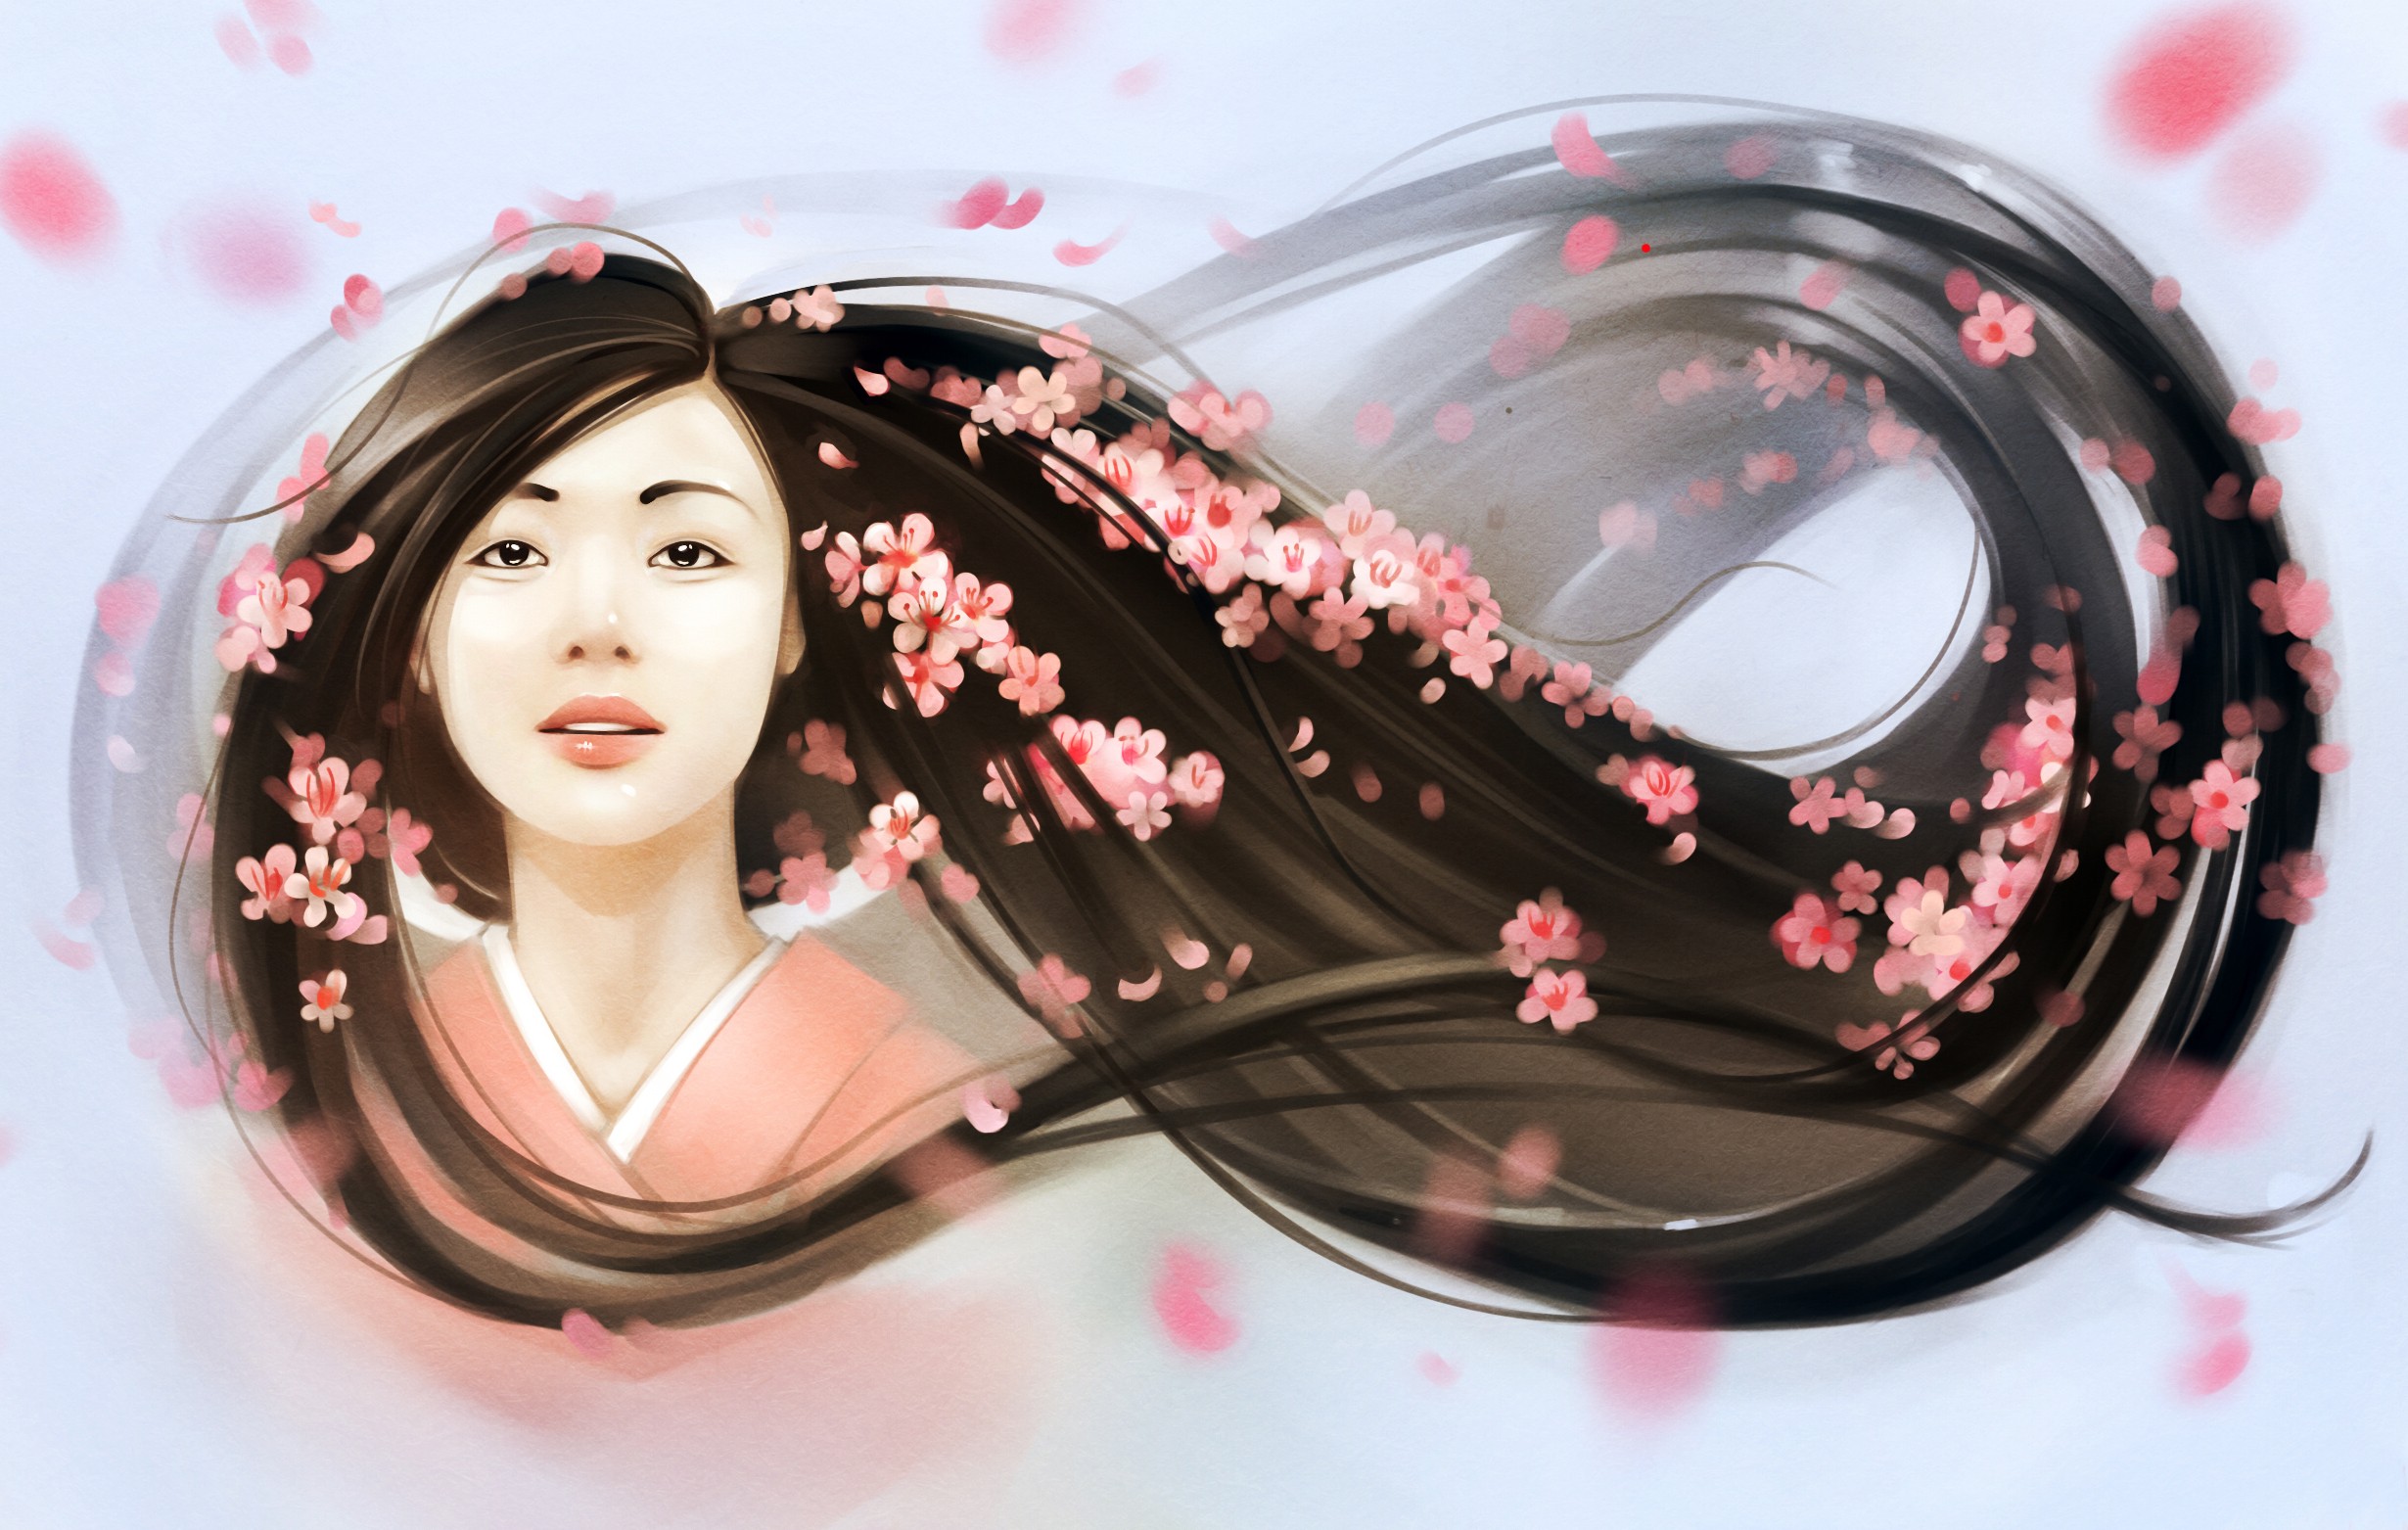 Asian, Women, Flowers, Artwork, Cherry blossom, Kimono Wallpaper